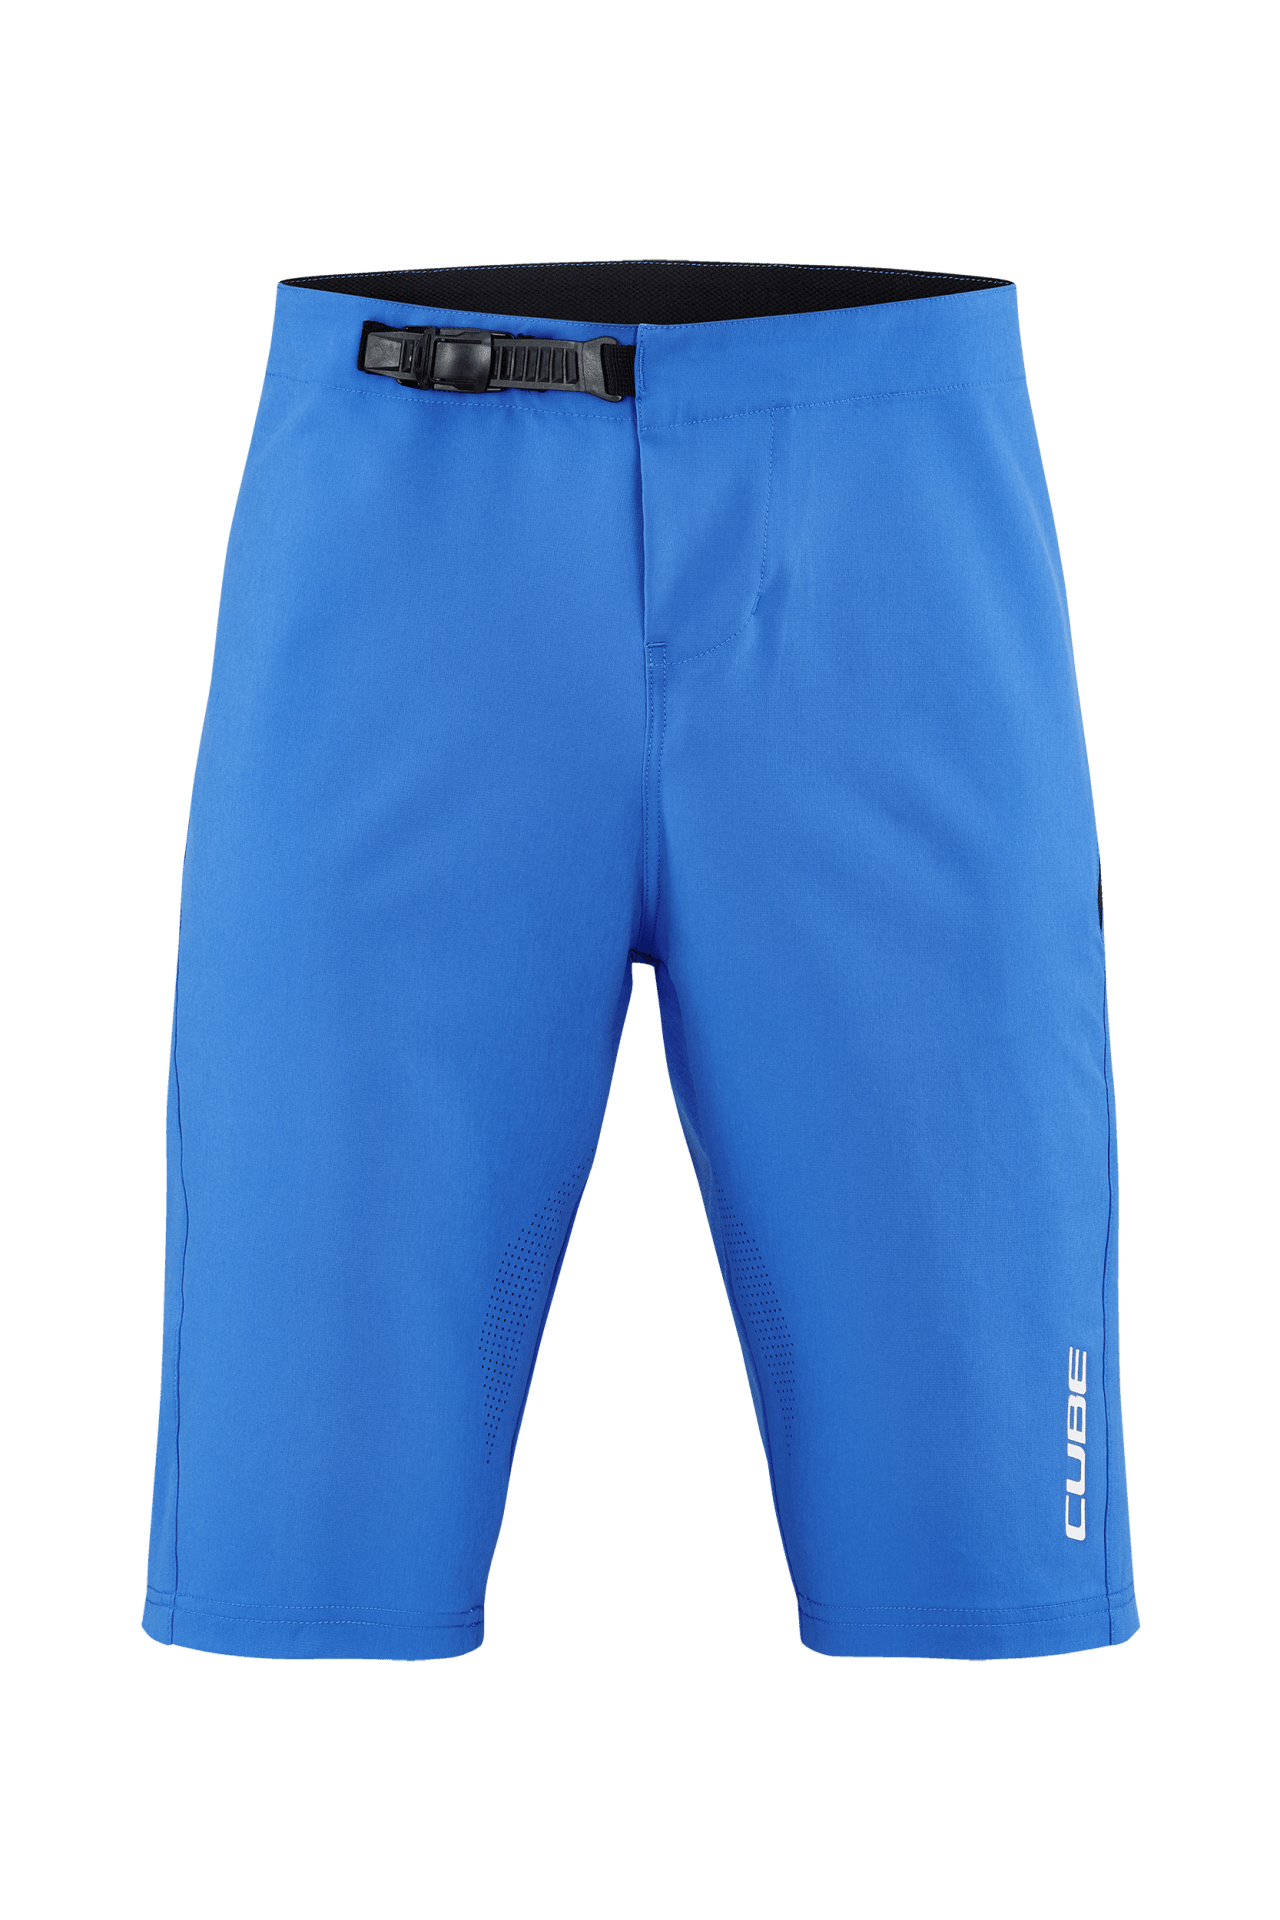 CUBE VERTEX Lightweight Baggy Shorts